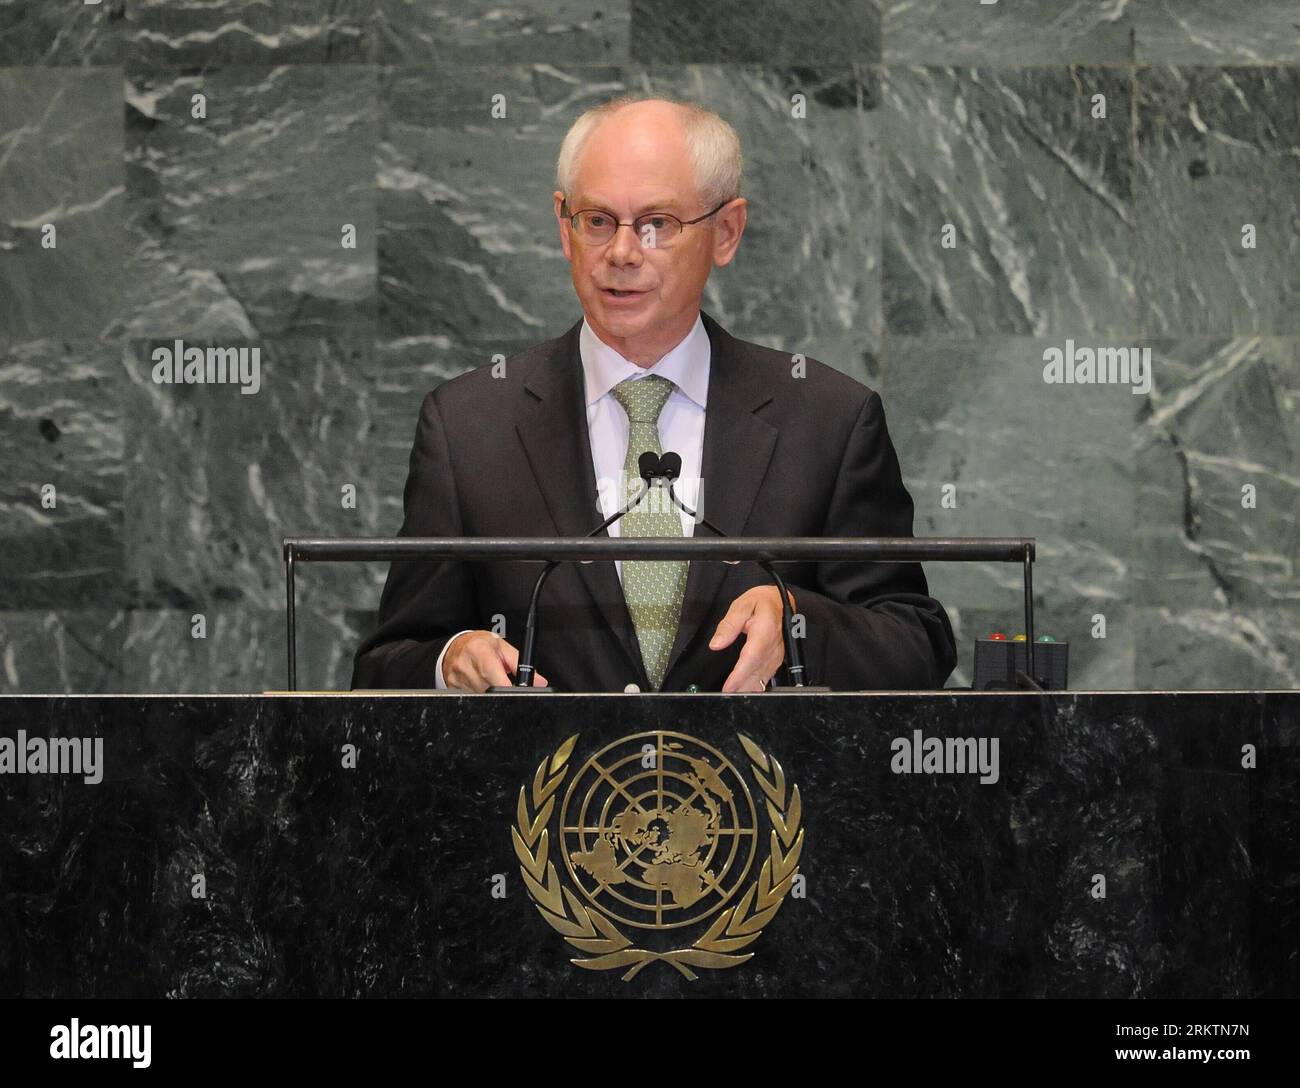 Bildnummer: 58518906 Datum: 26.09.2012 Copyright: imago/Xinhua (120926) -- NEW YORK, 26 settembre 2012 (Xinhua) -- il Presidente del Consiglio europeo Herman Van Rompuy si rivolge al dibattito generale della 67a sessione dell'Assemblea generale delle Nazioni Unite presso la sede delle Nazioni Unite a New York, negli Stati Uniti, il 26 settembre 2012, mentre l'evento della durata di una settimana è entrato nel suo secondo giorno qui mercoledì. (Xinhua/Shen Hong) un-NEW YORK-ASSEMBLEA GENERALE-DIBATTITO GENERALE PUBLICATIONxNOTxINxCHN People Politik uno Generalversammlung Porträt x0x xmb 2012 quer 58518906 Data 26 09 2012 Copyright Imago XINHUA New York settembre 26 201 Foto Stock